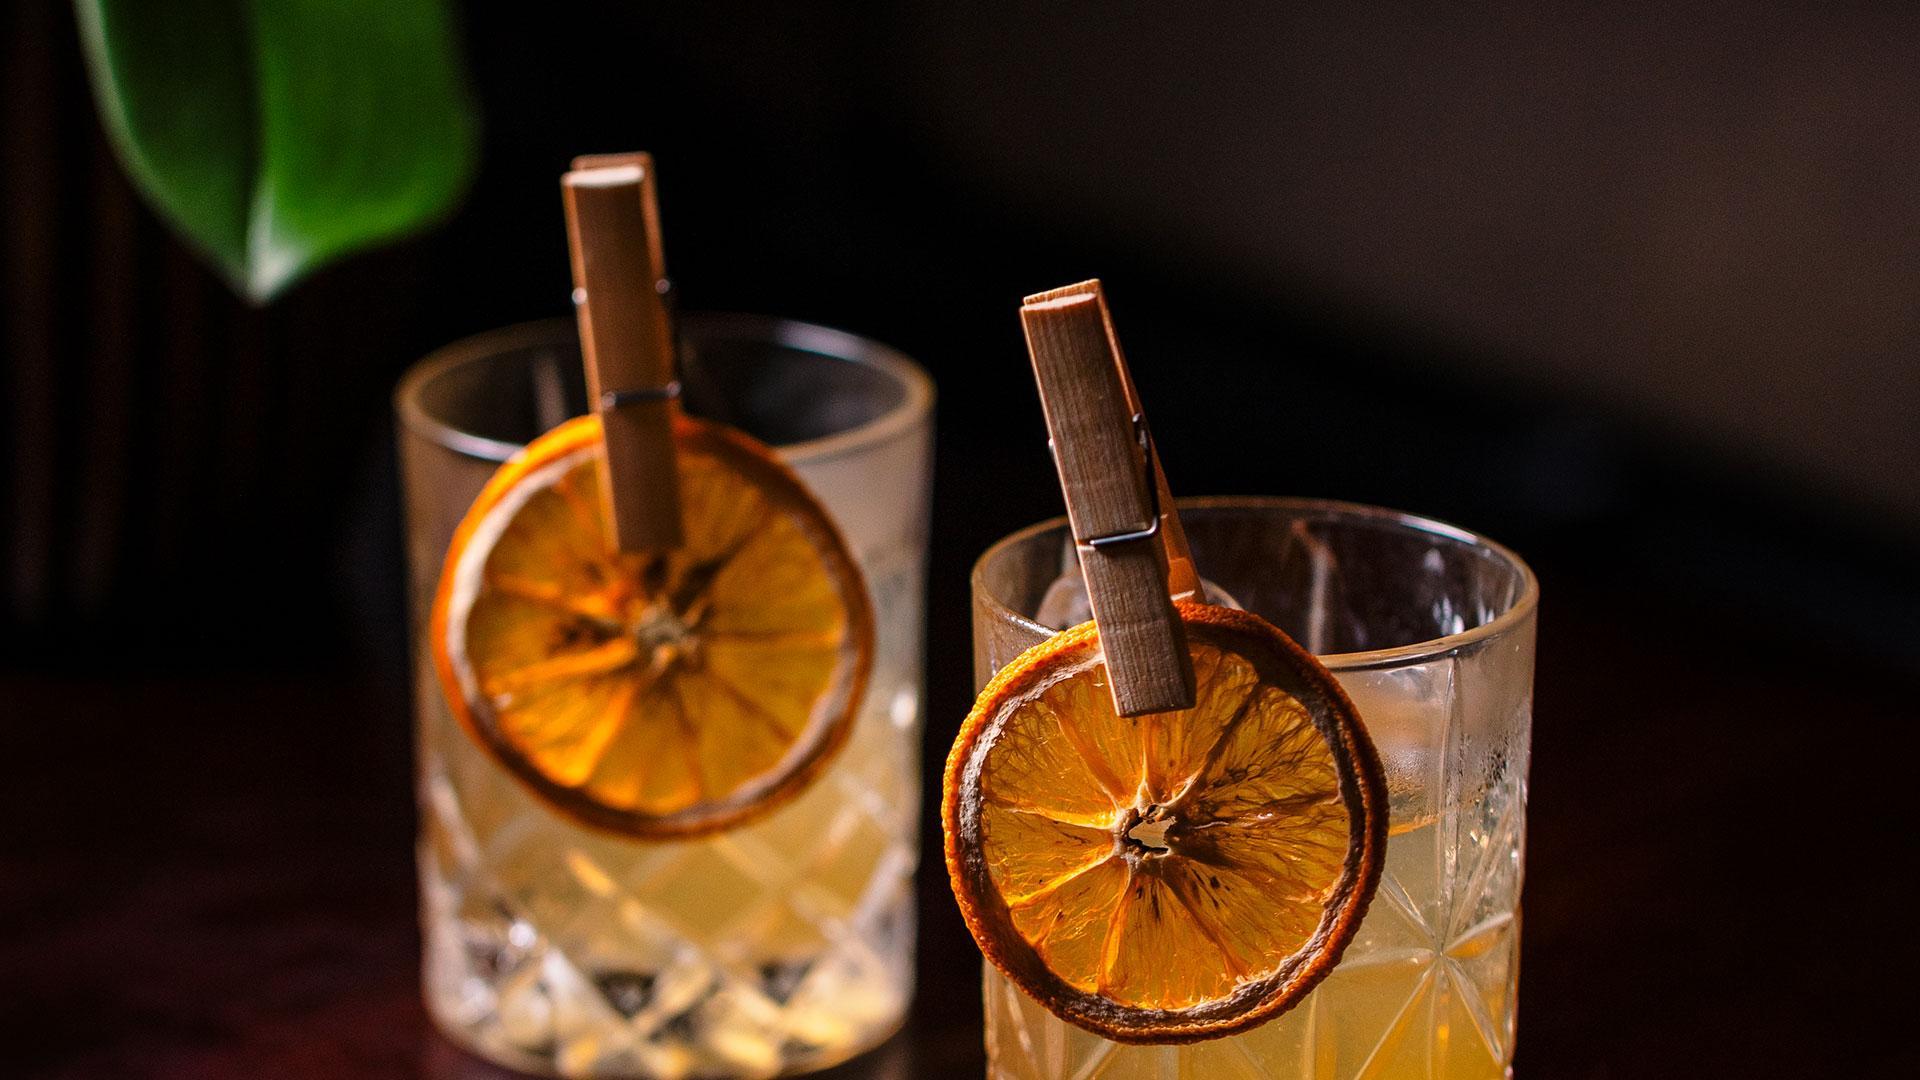 Cocktail at Blind Pig Lounge & Bar